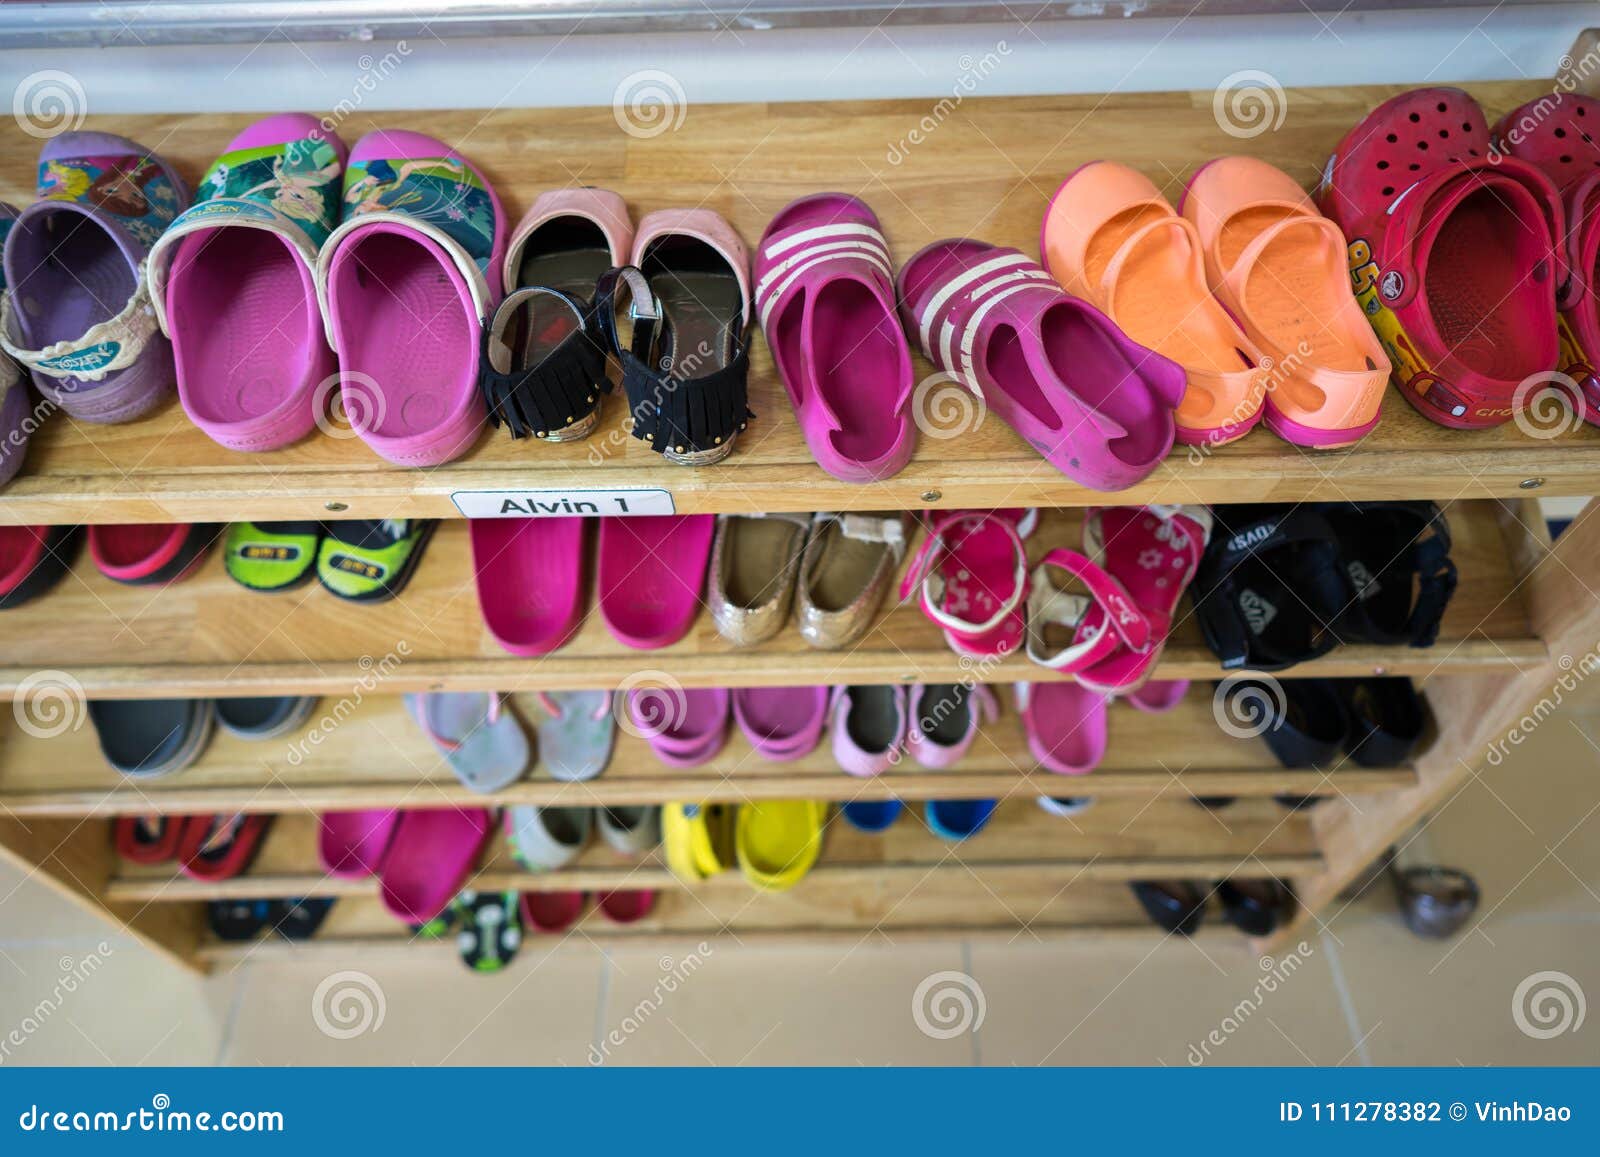 kindergarten indoor shoes